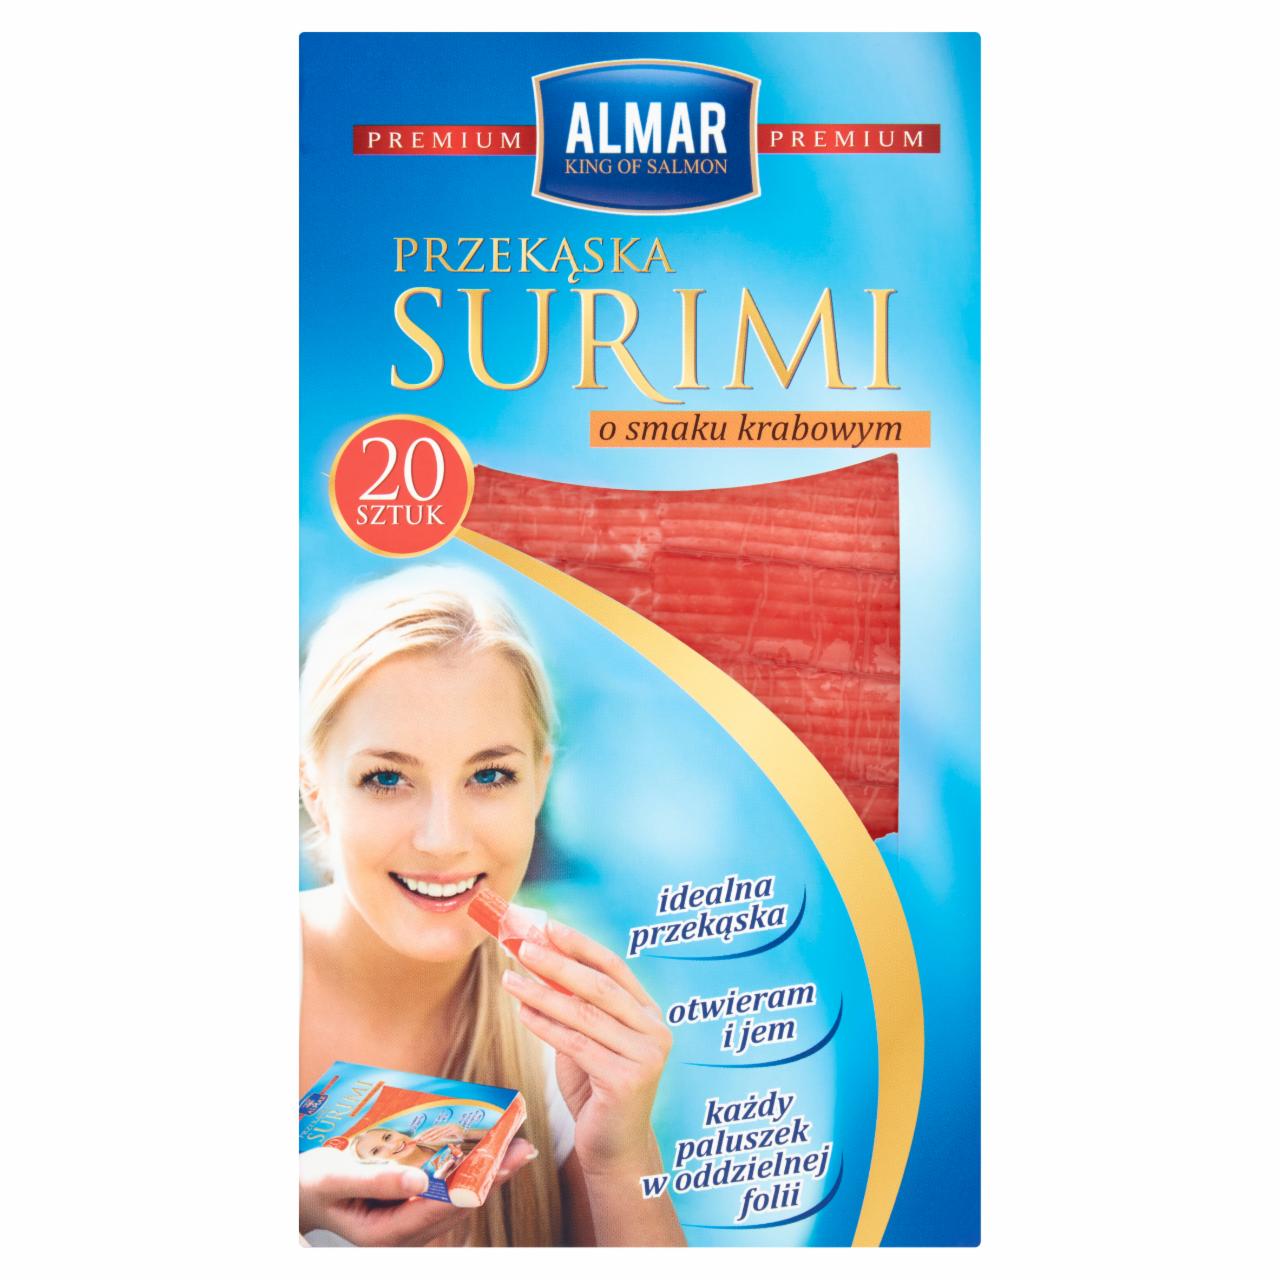 Zdjęcia - Almar Premium Przekąska surimi o smaku krabowym 200 g (20 sztuk)